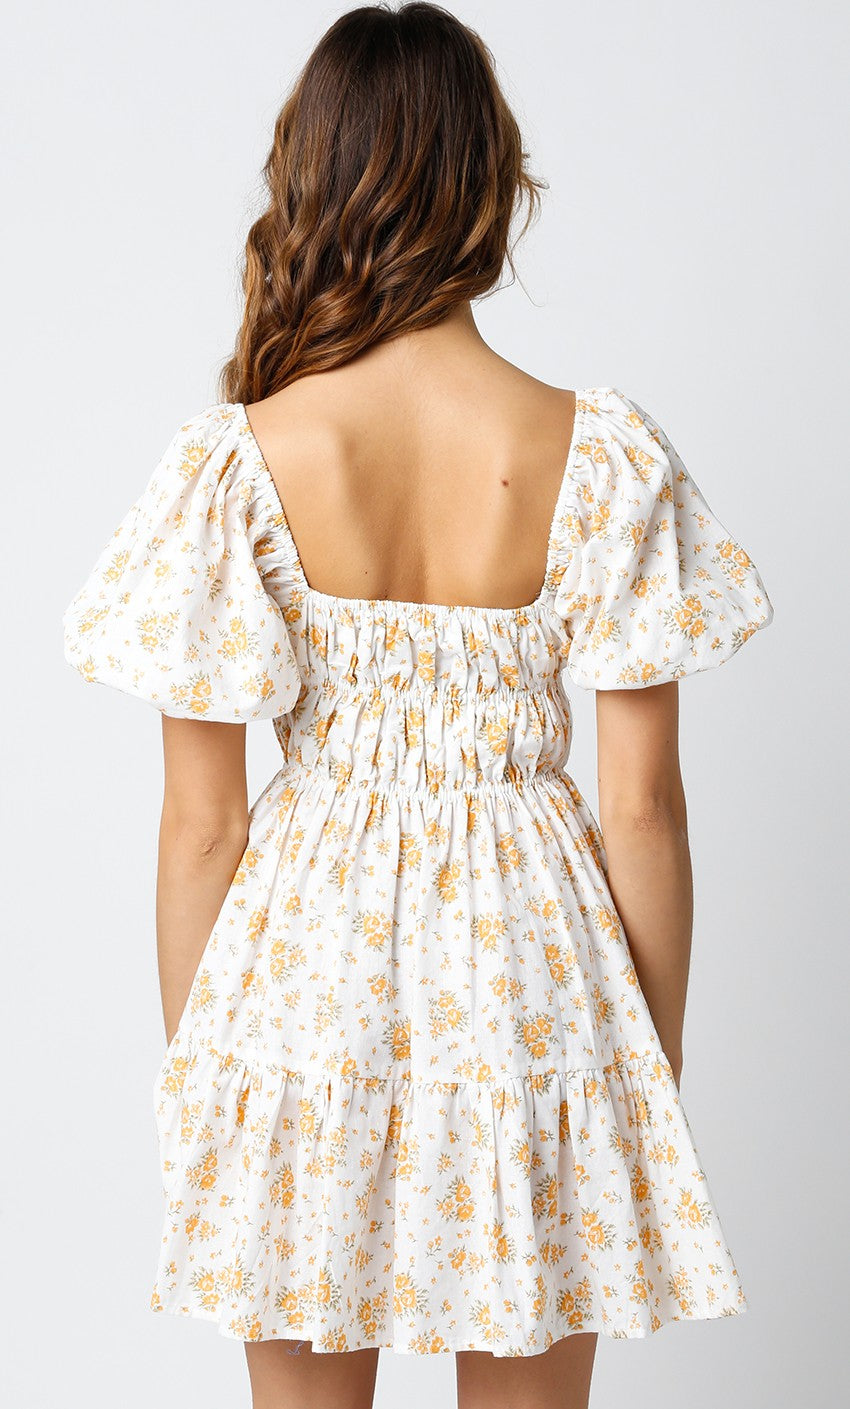 Hadley Marigold Mini Dress, White